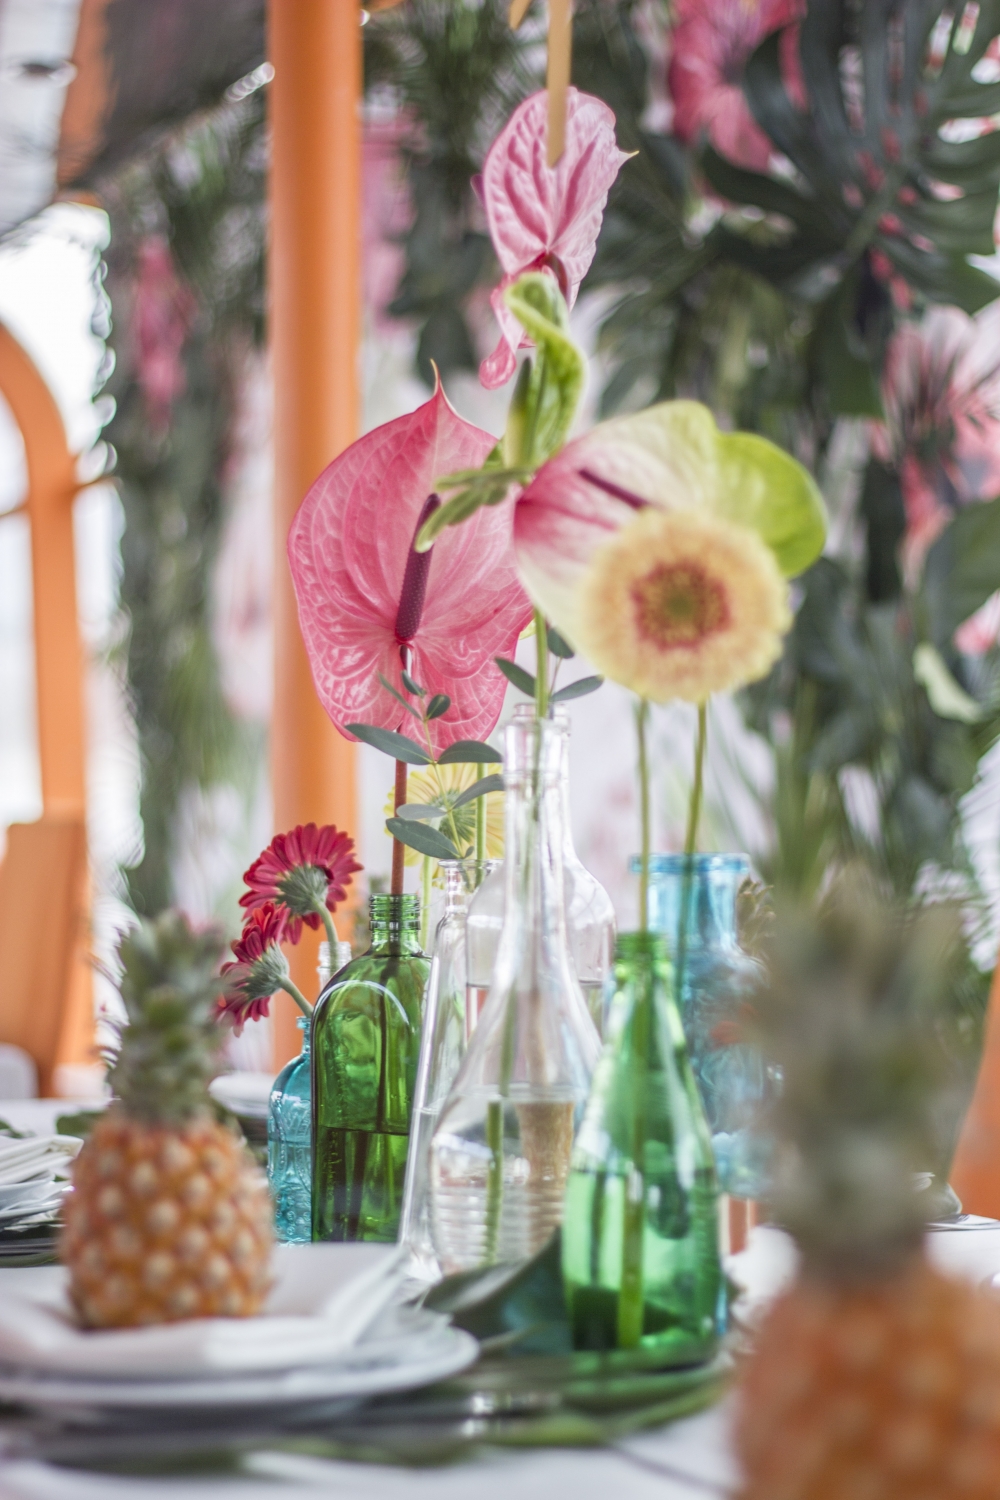 Тропический декор гостевых столов. Антуриум и герберы в разноцветных бутылочках, ананасики на тарелочках и листья монстеры под тарелками.